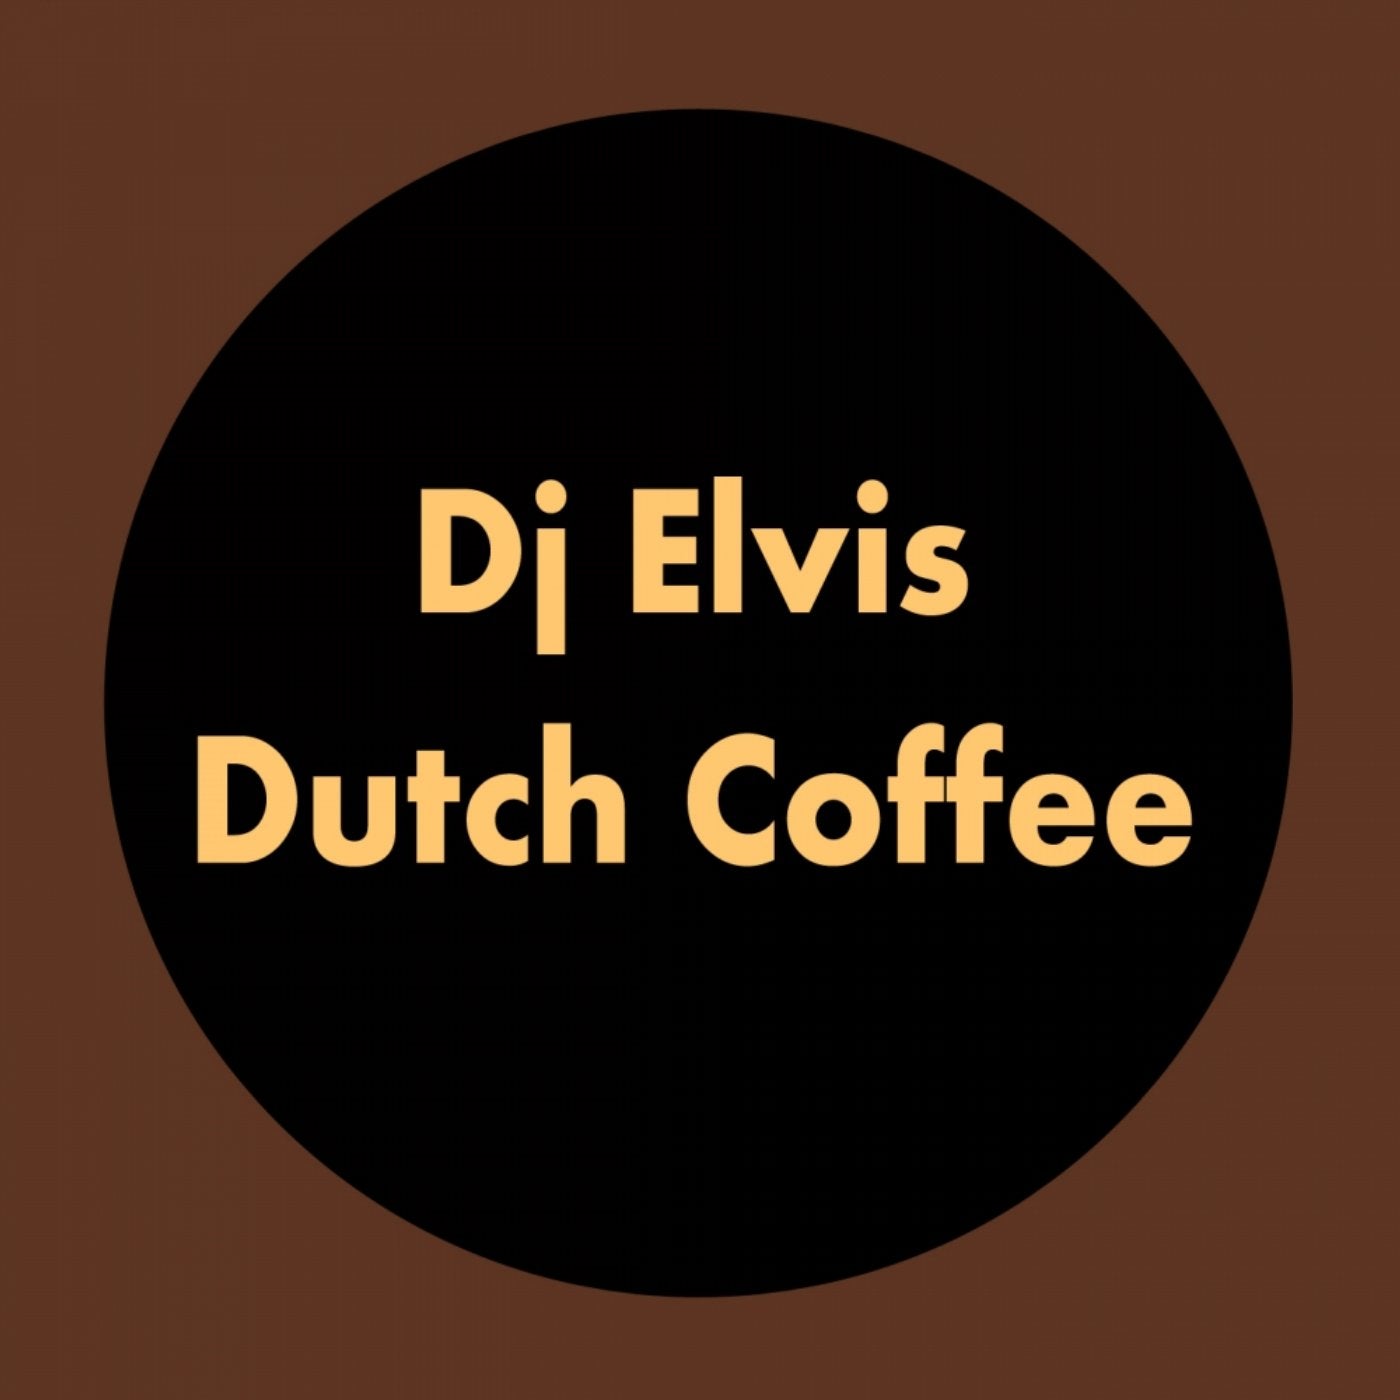 Dutch Coffee